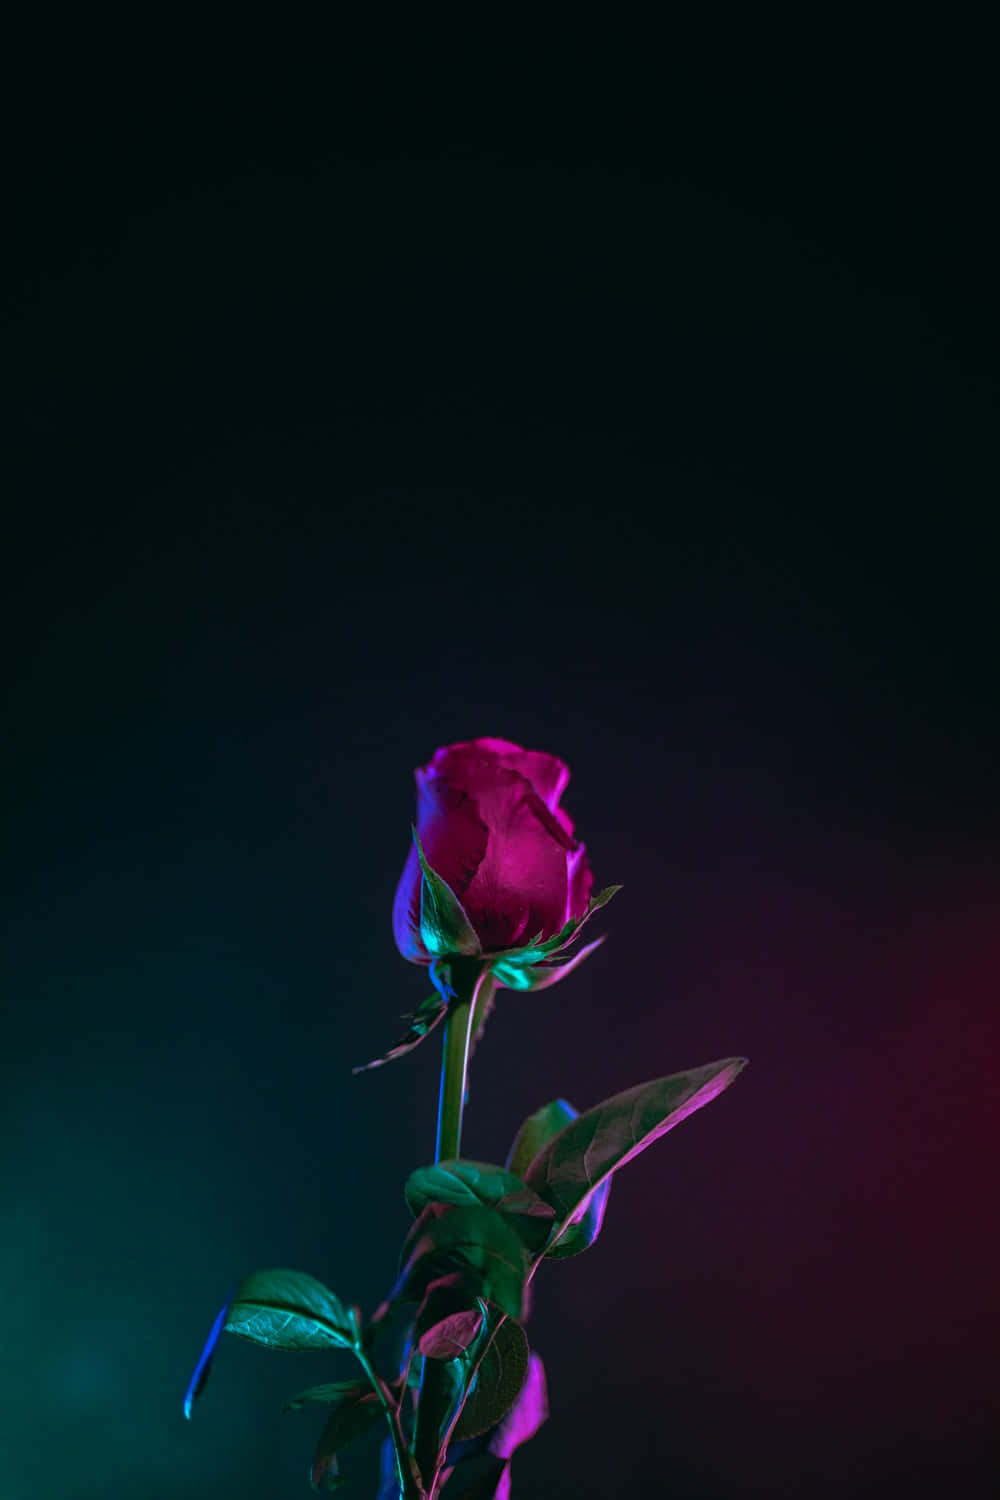 Nyd skønheden og roen, som de levende farver af denne cool Rose bringer. Wallpaper